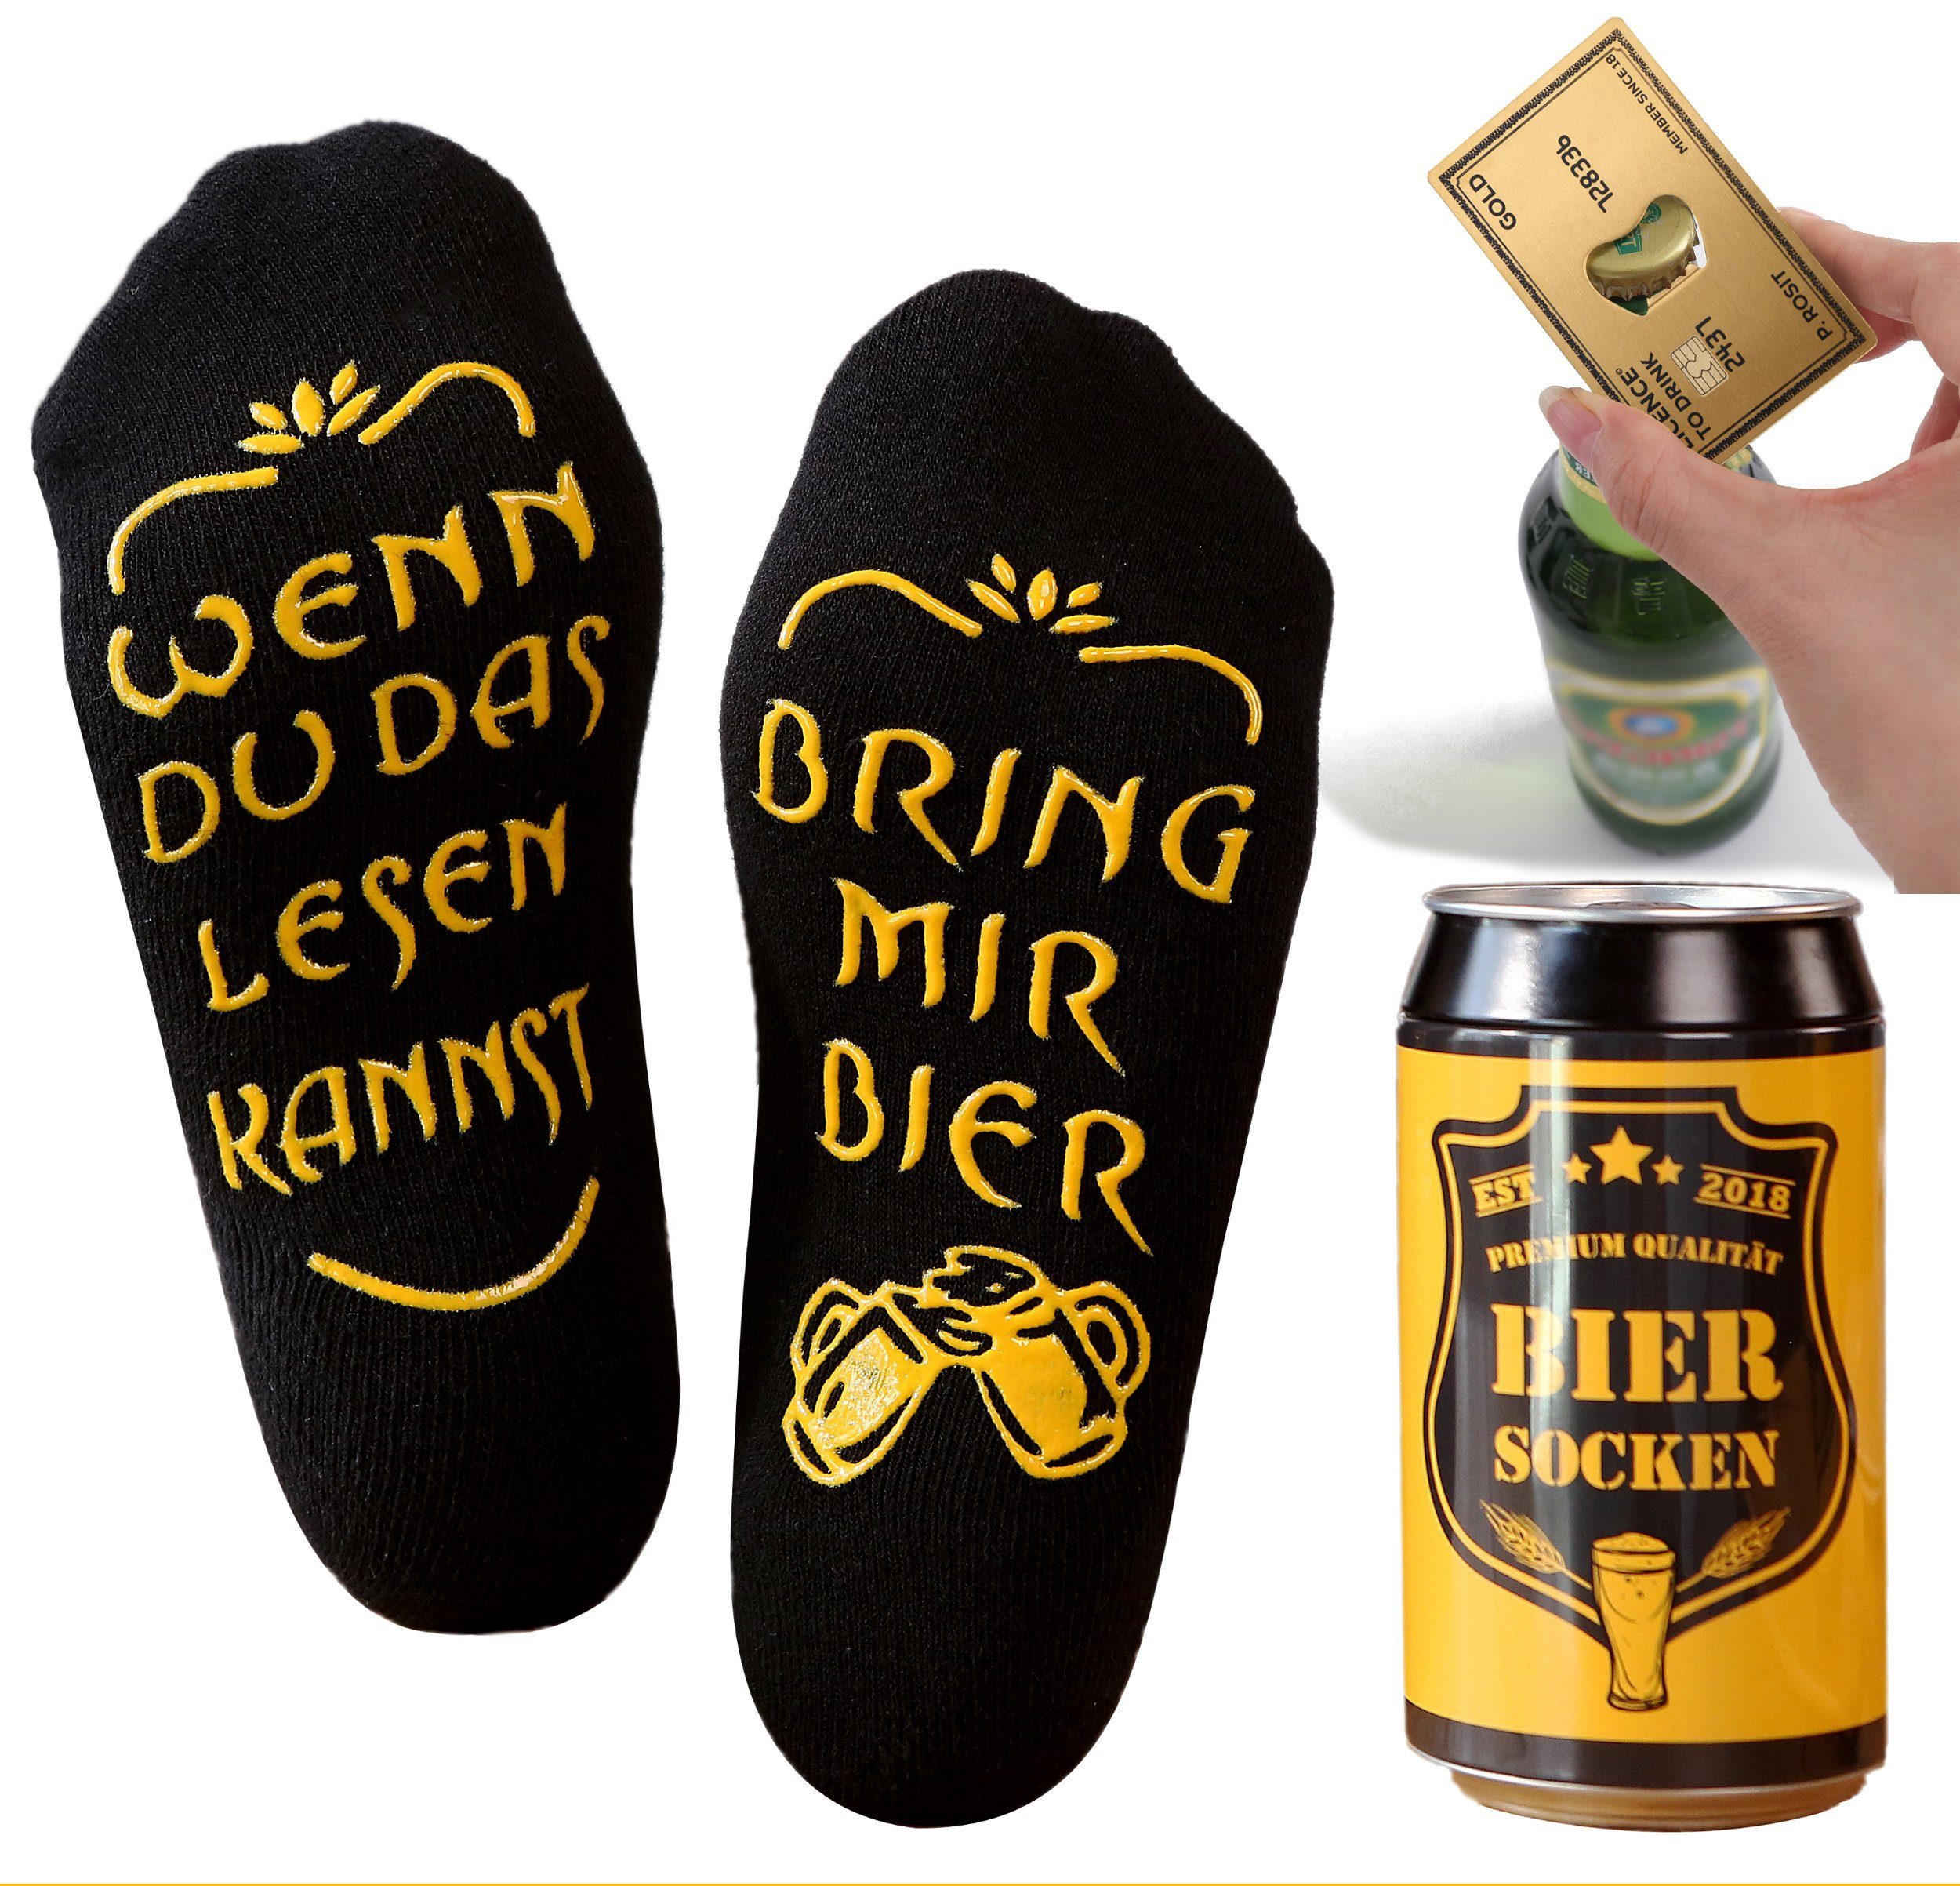 Lucadeau Freizeitsocken mit Spruch und Edelstahl Flaschenöffner, bring mir Bier Носки, (1 Paar) rutschfest, Gr. 38-44, Geschenke für Männer, Geburtstagsgeschenk